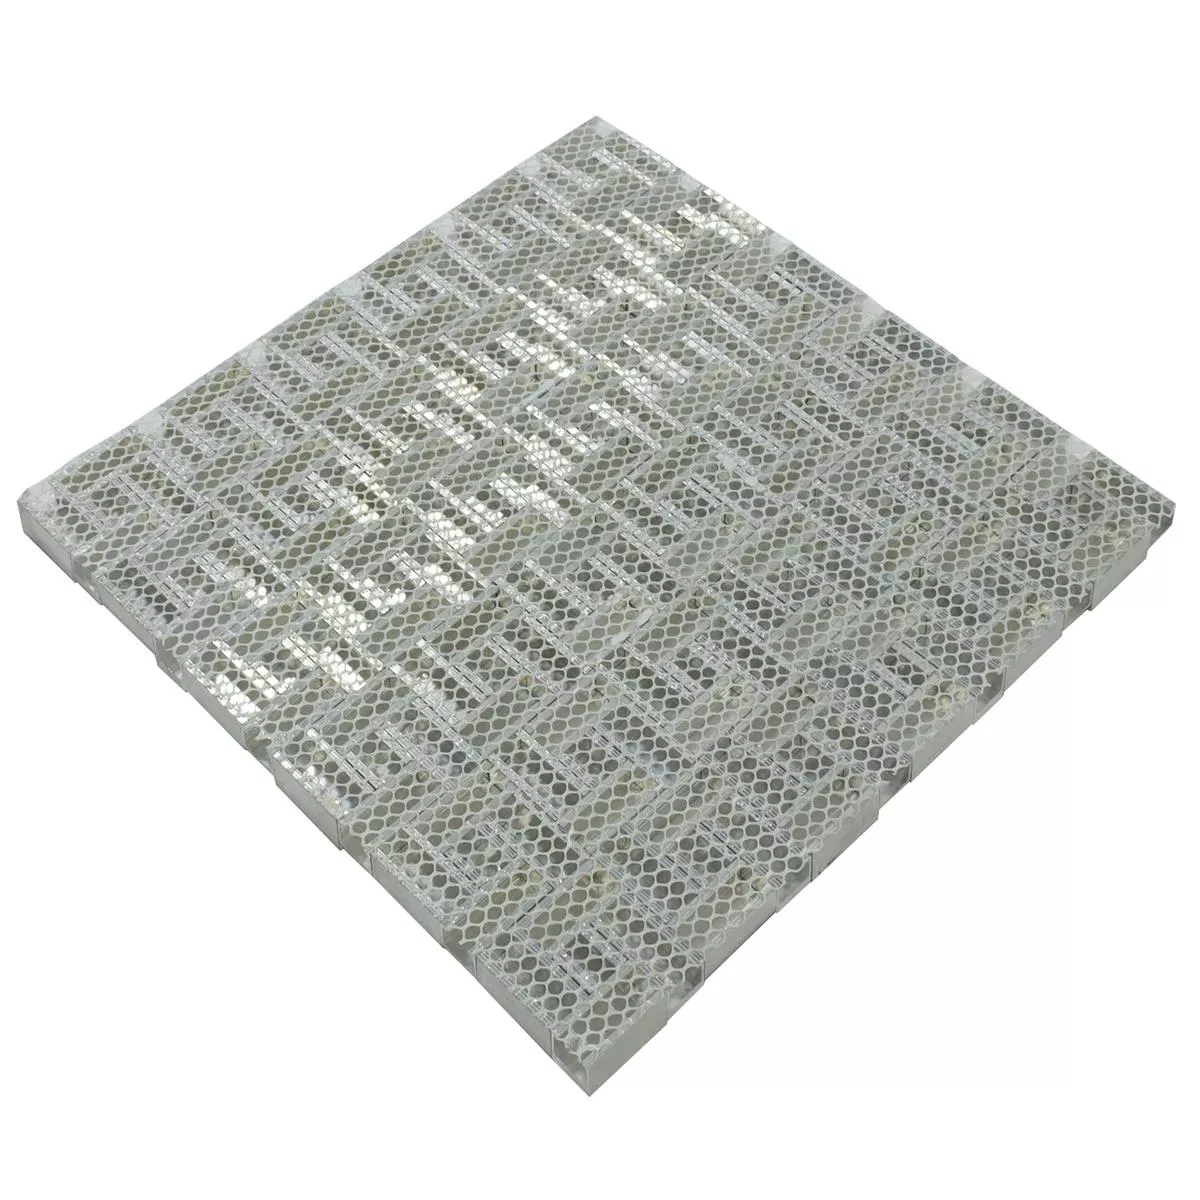 Aluminium Metal Mosaic Tiles Quantum Silver